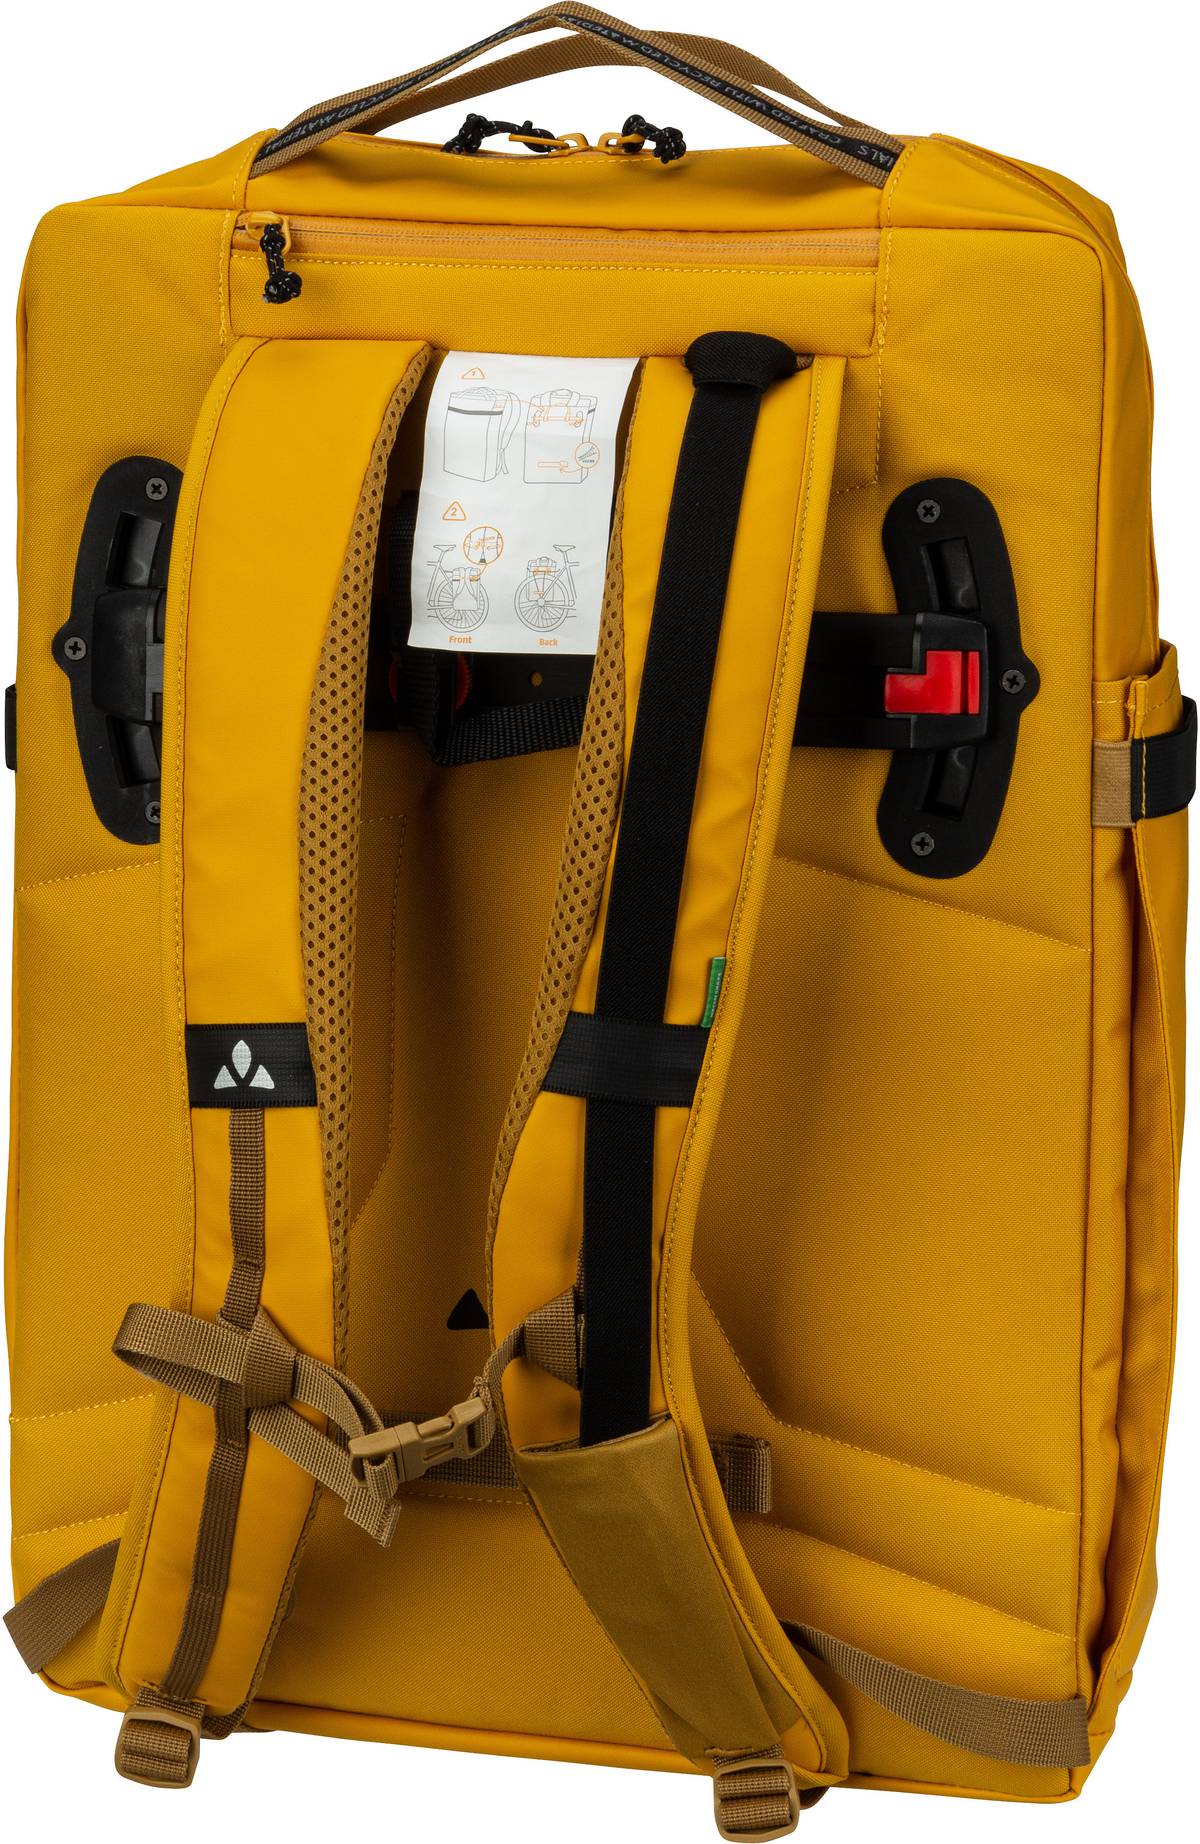 Vaude  Mineo Transformer Backpack 20 - 2in1 Fahrradtaschen-Rucksack - Gelb (Burnt Yellow)